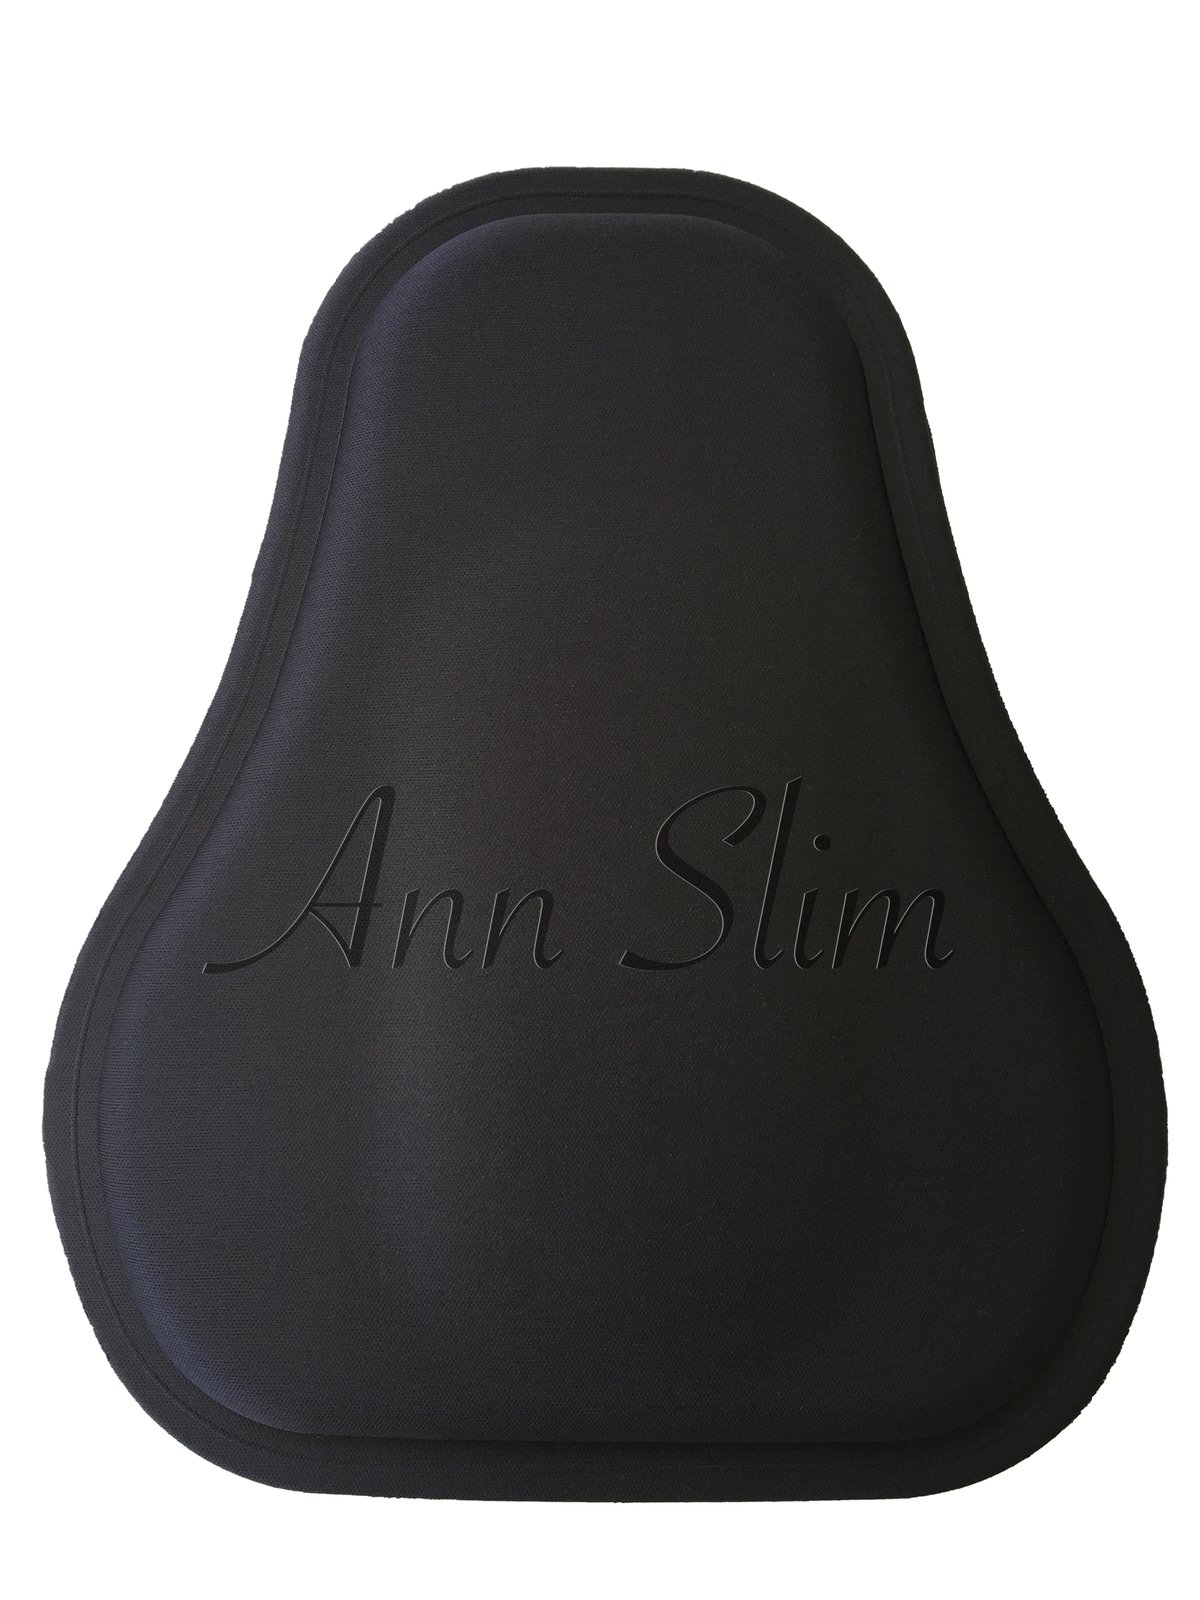 Ann Slim 500 Abdominal Board Pear Shape